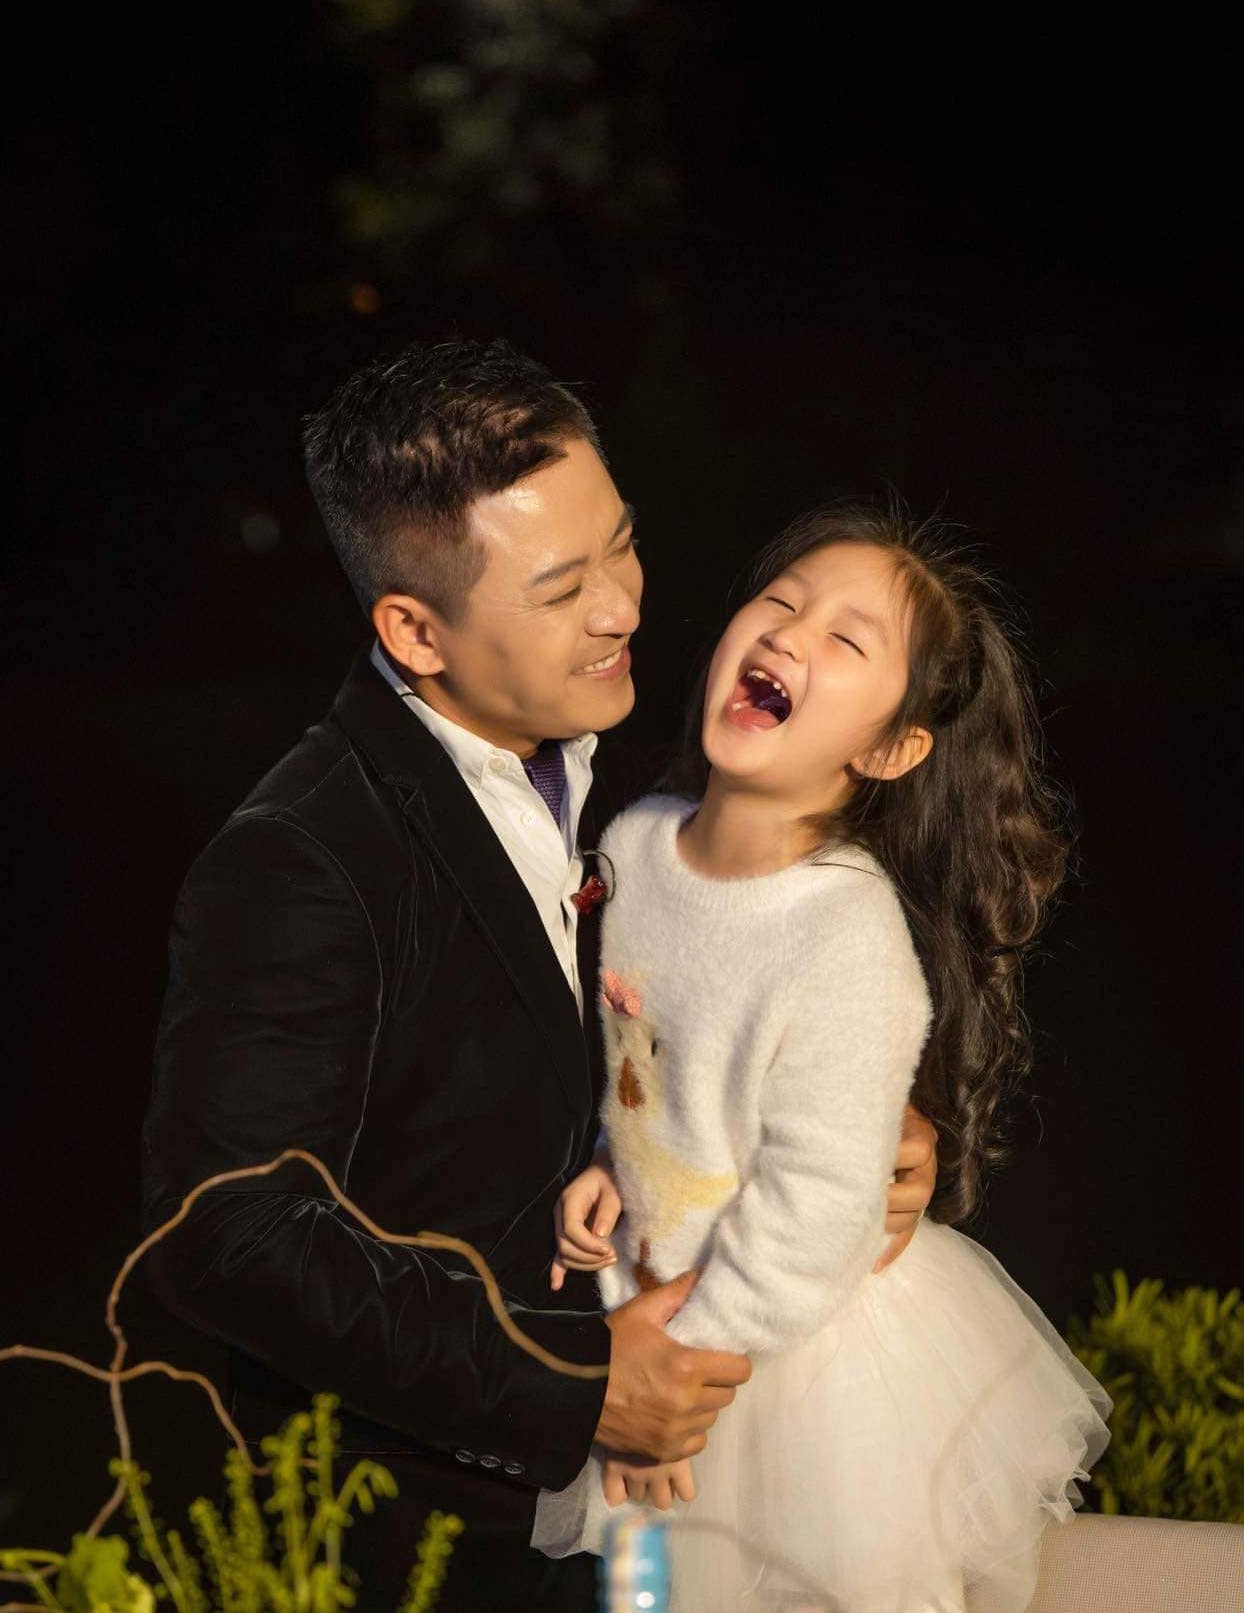 Những bức ảnh gia đình của Nhung Tuấn sẽ khiến bạn muốn hiểu rõ hơn về tình cảm gia đình và cảm nhận được tình yêu thương đong đầy trong mỗi khoảnh khắc.